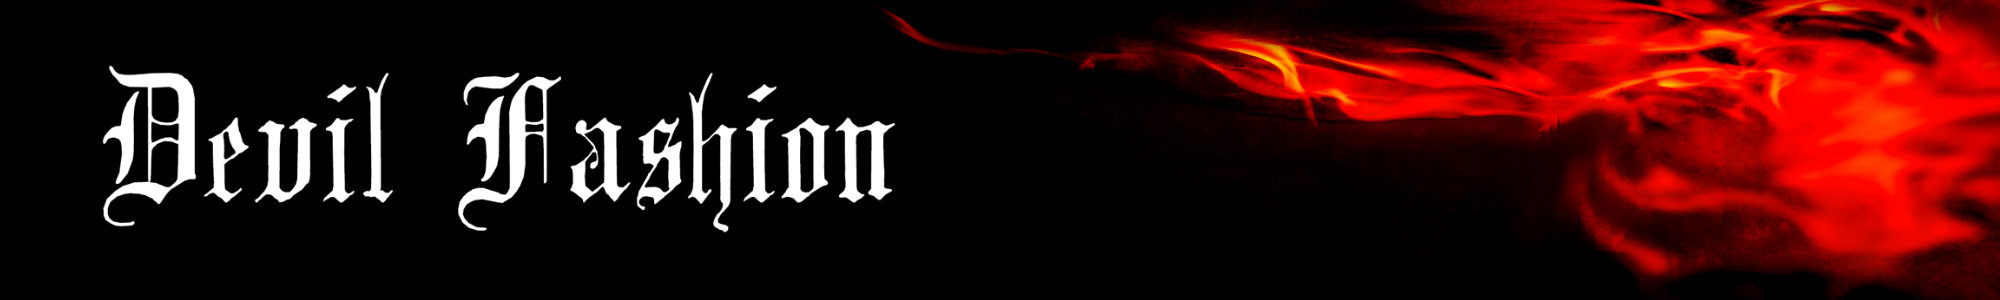 Devil Fashion Logo